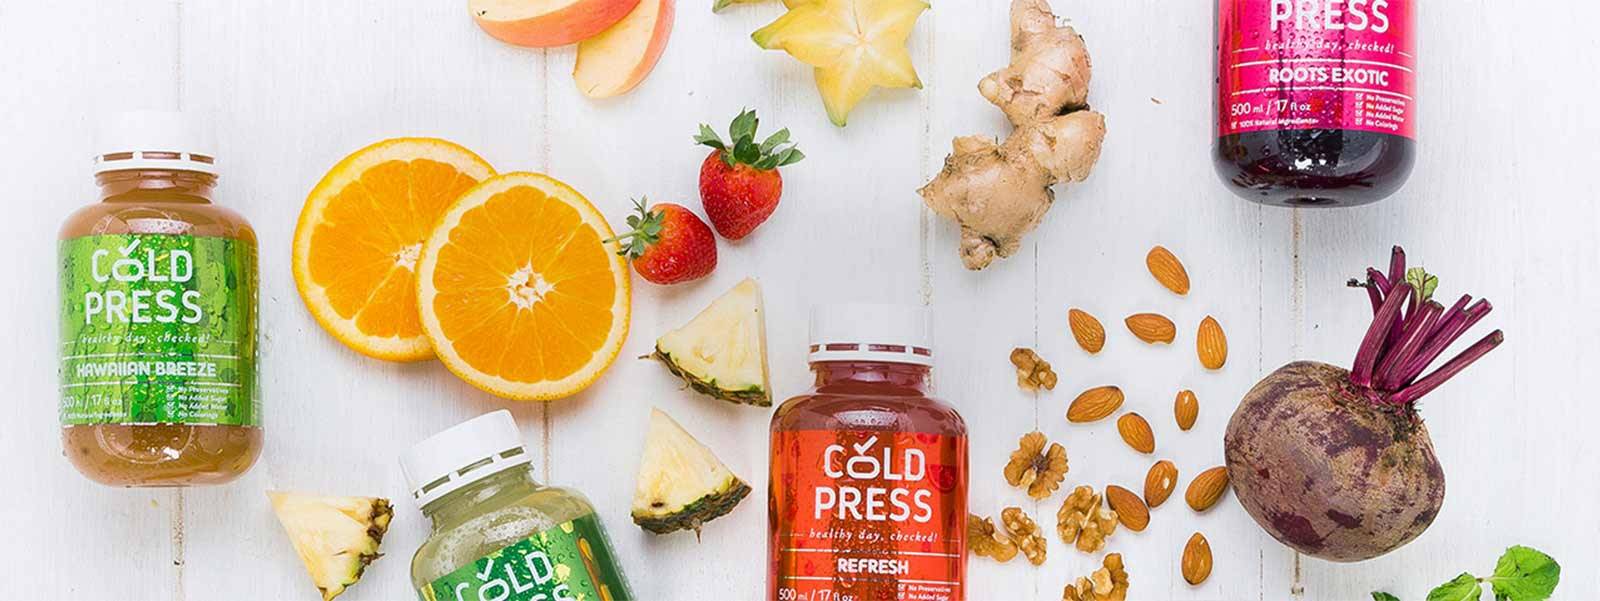 Cold Press Juice, Jus Buah dan Sayur Segar yang Praktis Dibawa Kemana Saja